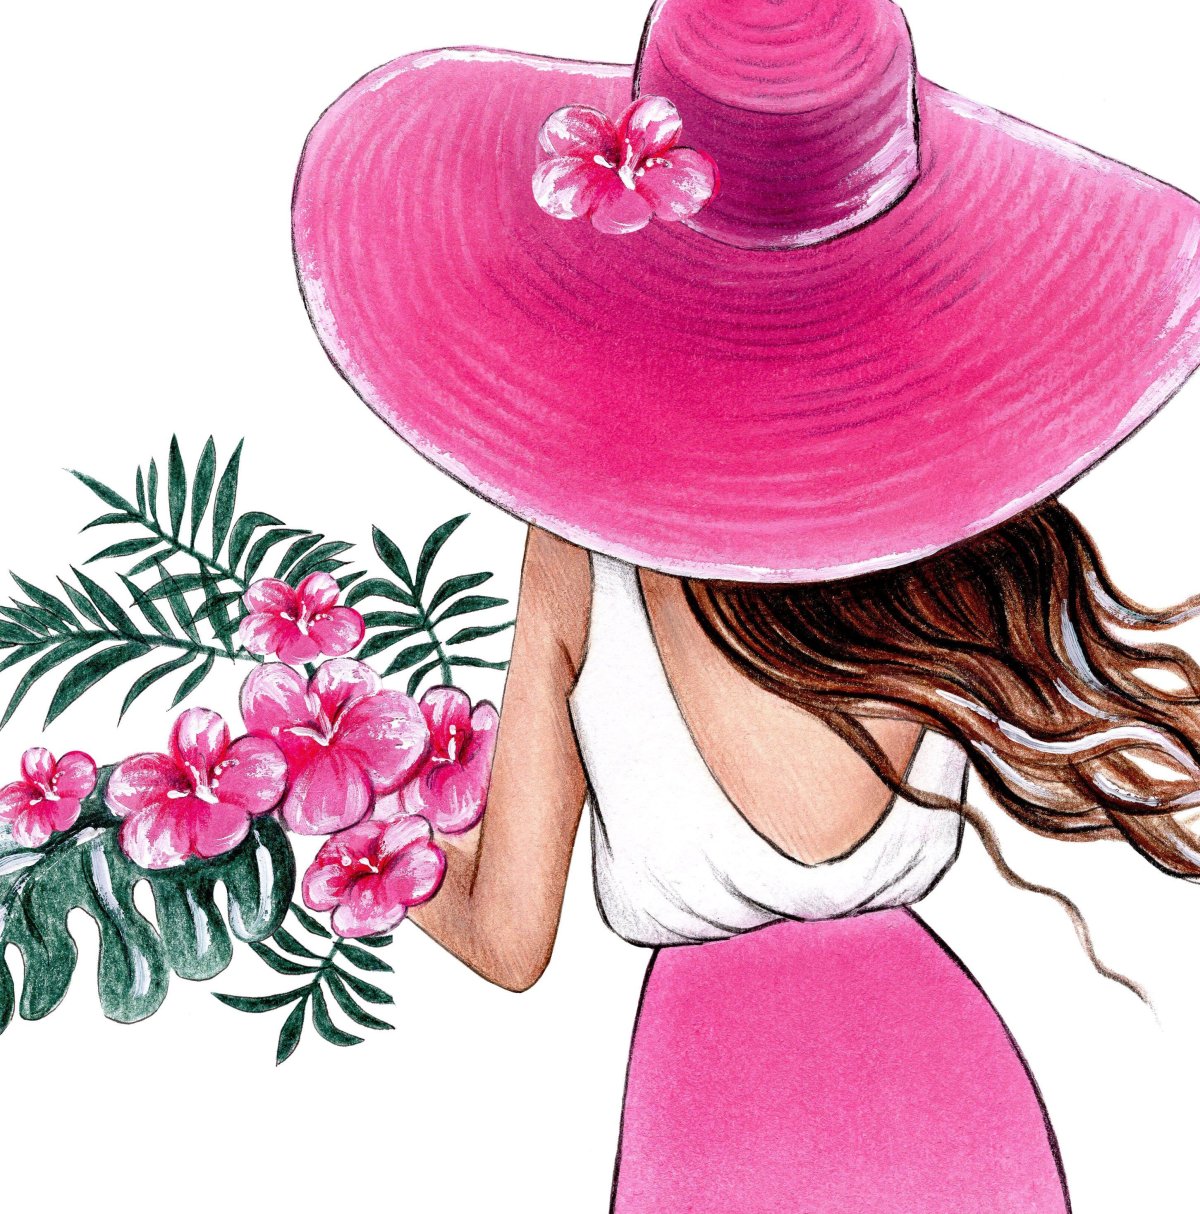 Девушка в розовой шляпе